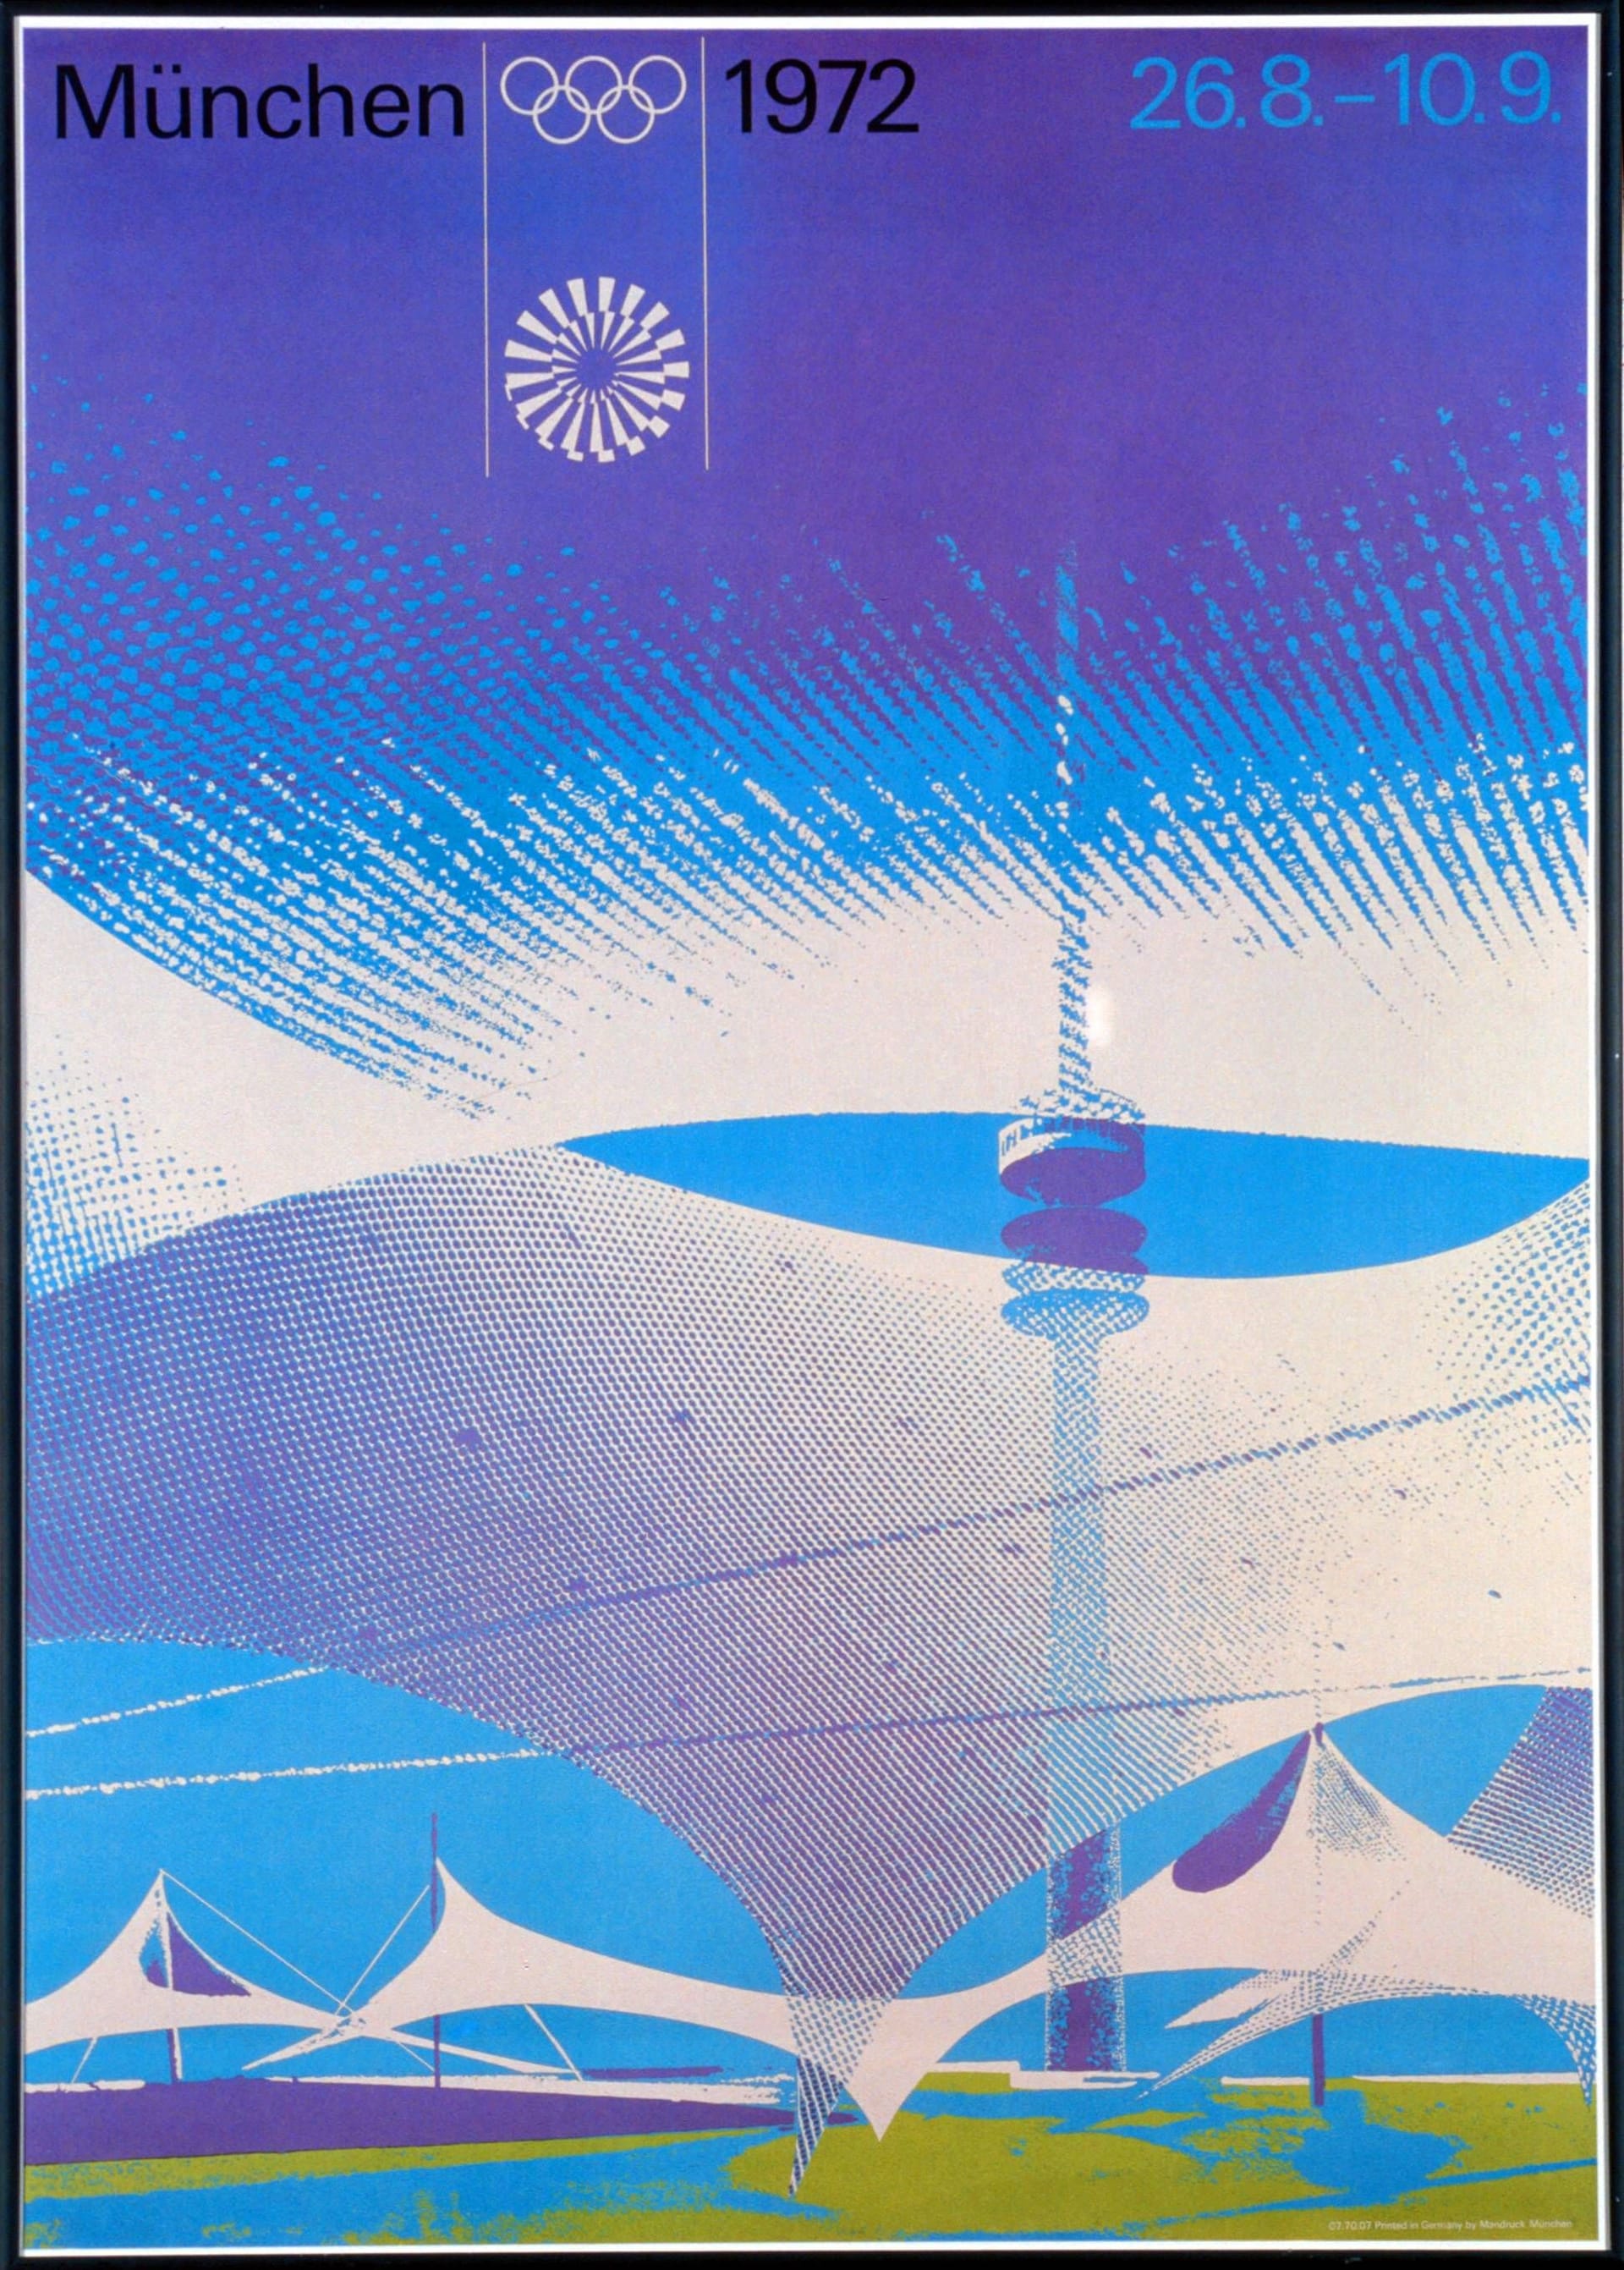 Plakat zu den Olympischen Spielen 1972 in München: Aicher griff konsequent auf eine begrenzte Palette aus Pastellfarben zurück.